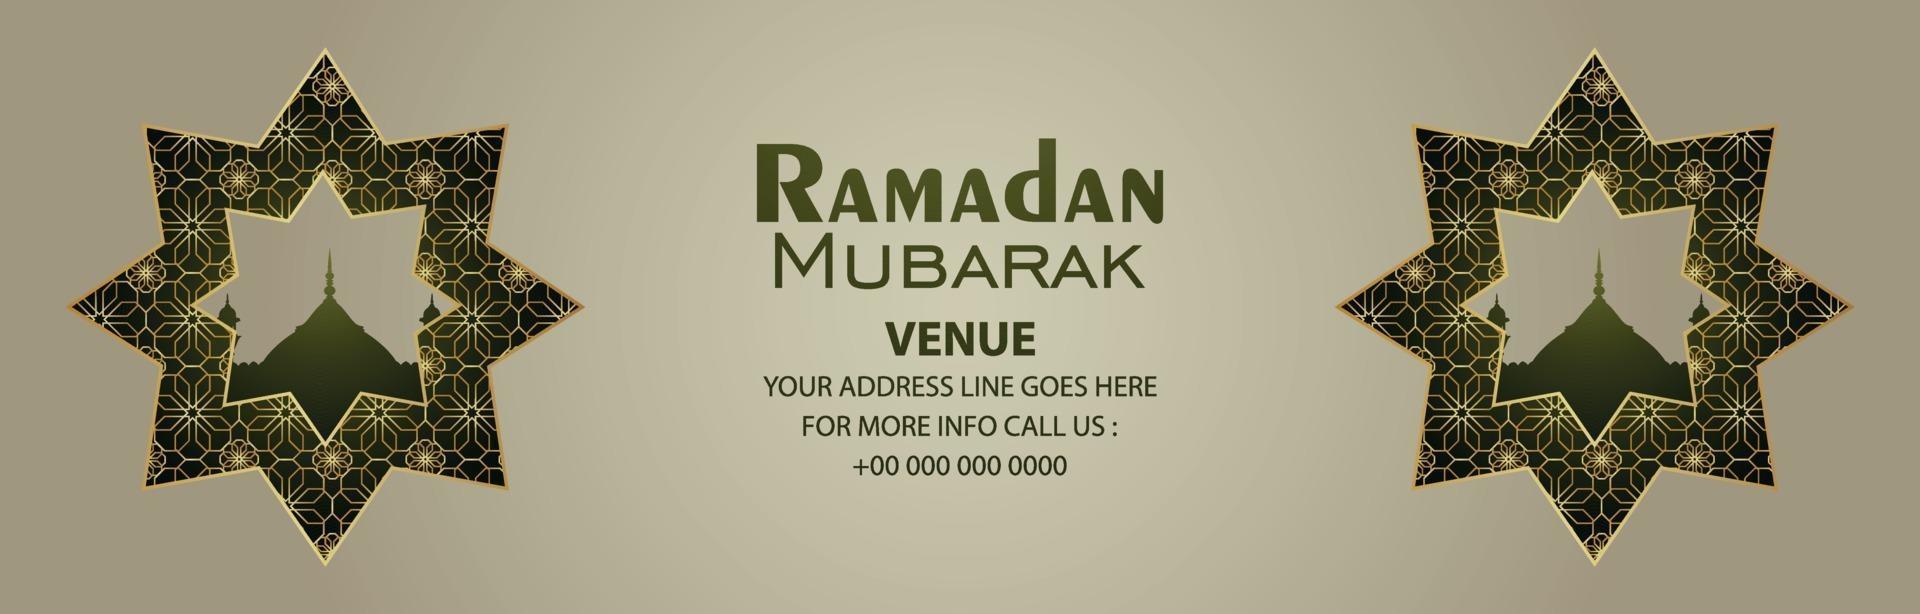 Ramadan Kareem Feier Banner auf Musterhintergrund vektor